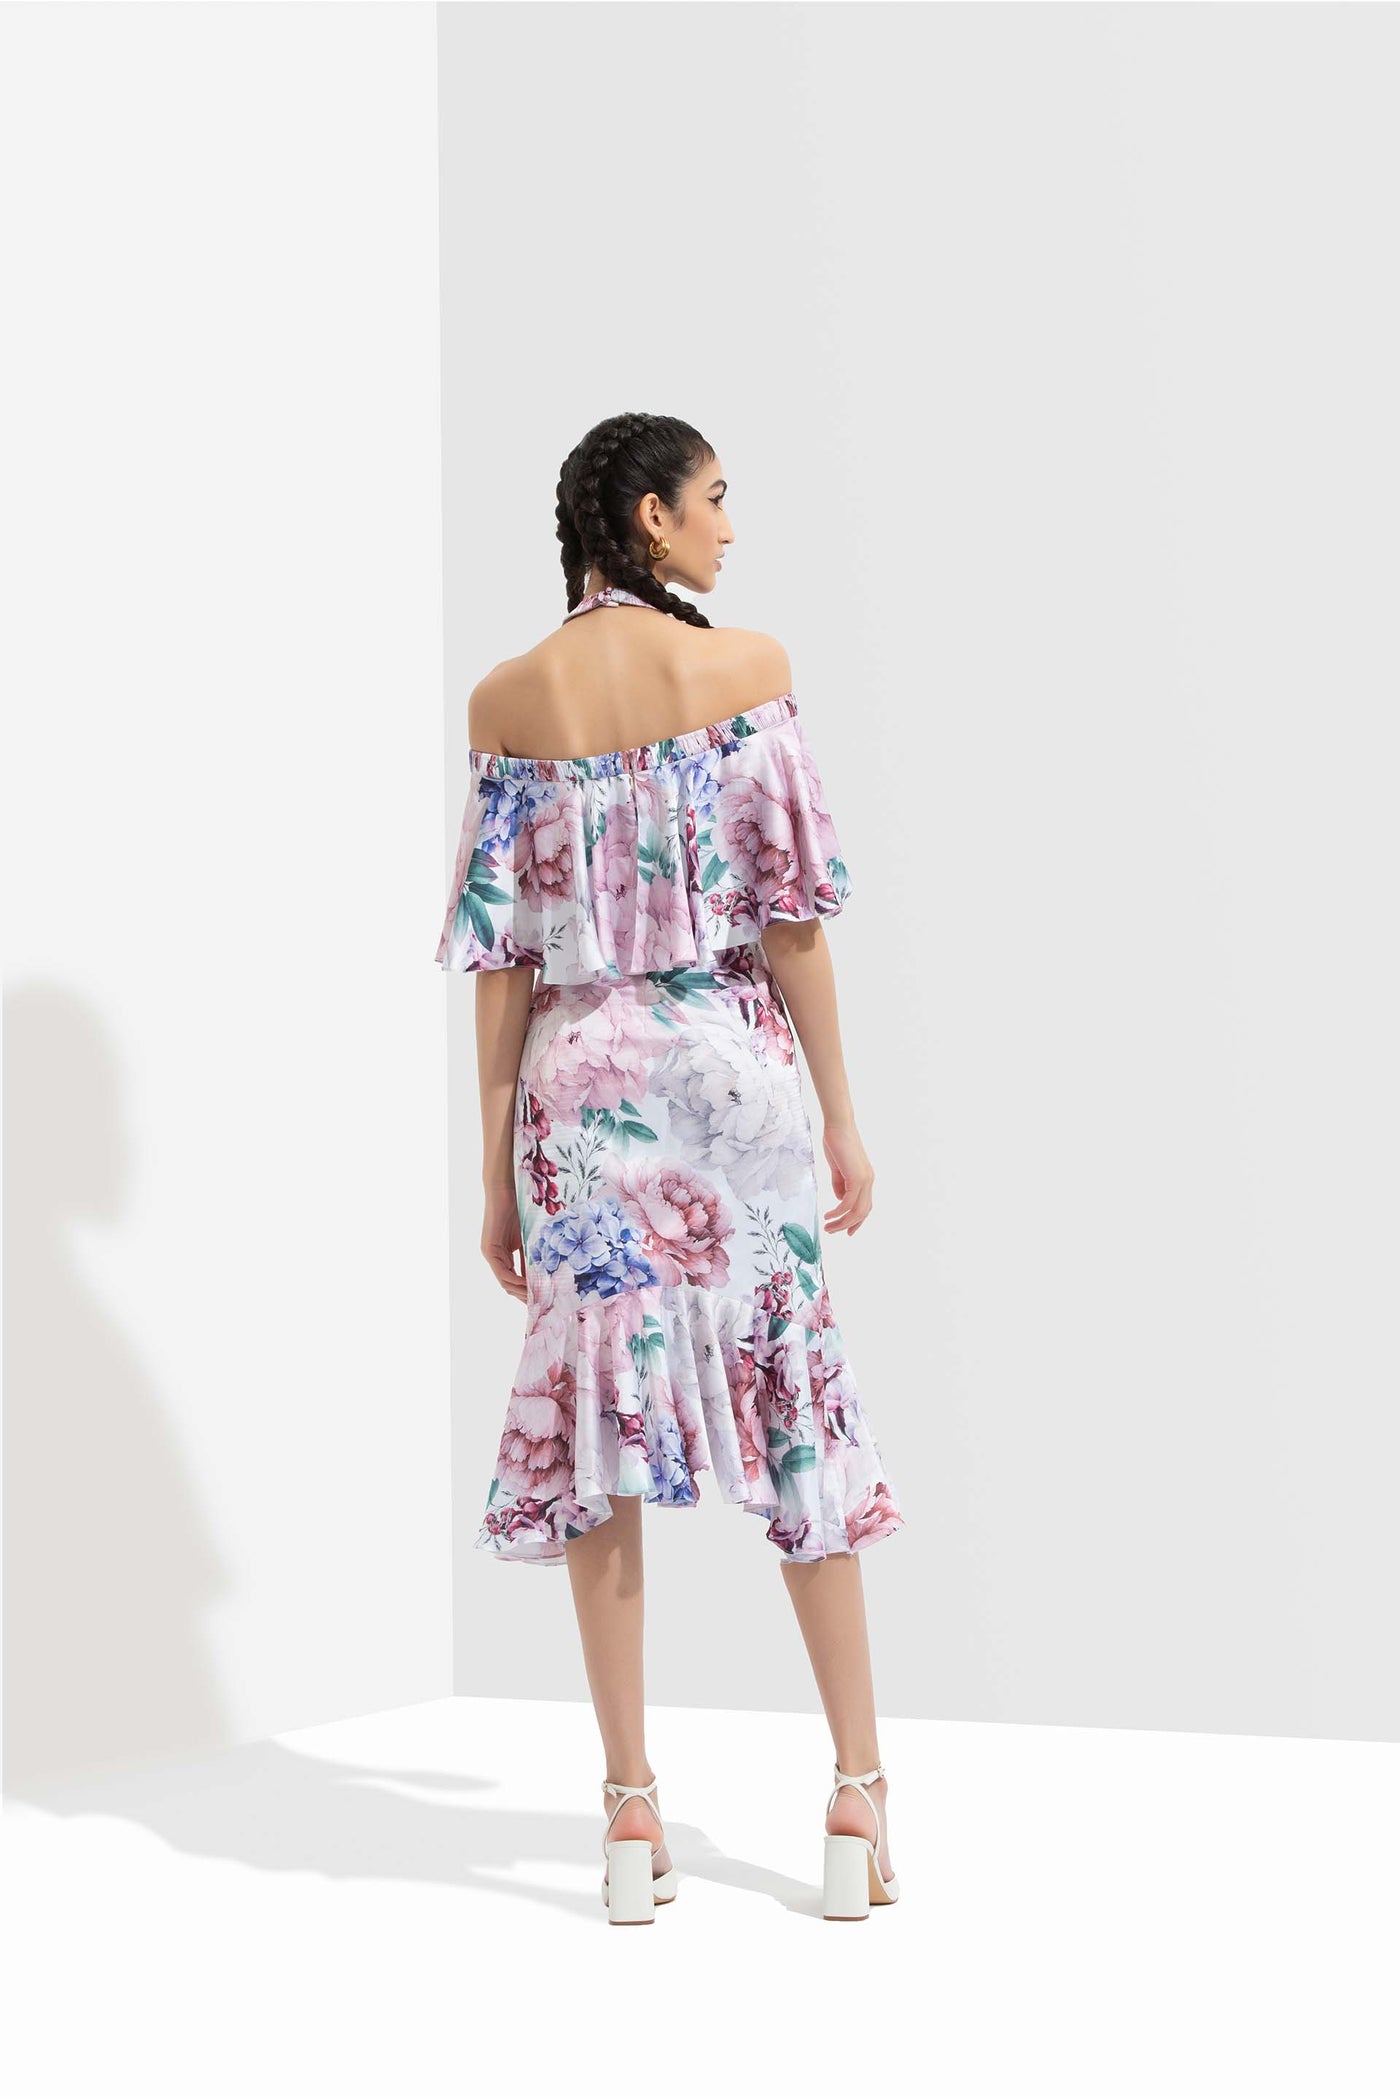 Mandira Wirk Iris printed satin off shoulder dress with halter neckline white western indian designer wear online shopping melange singapore